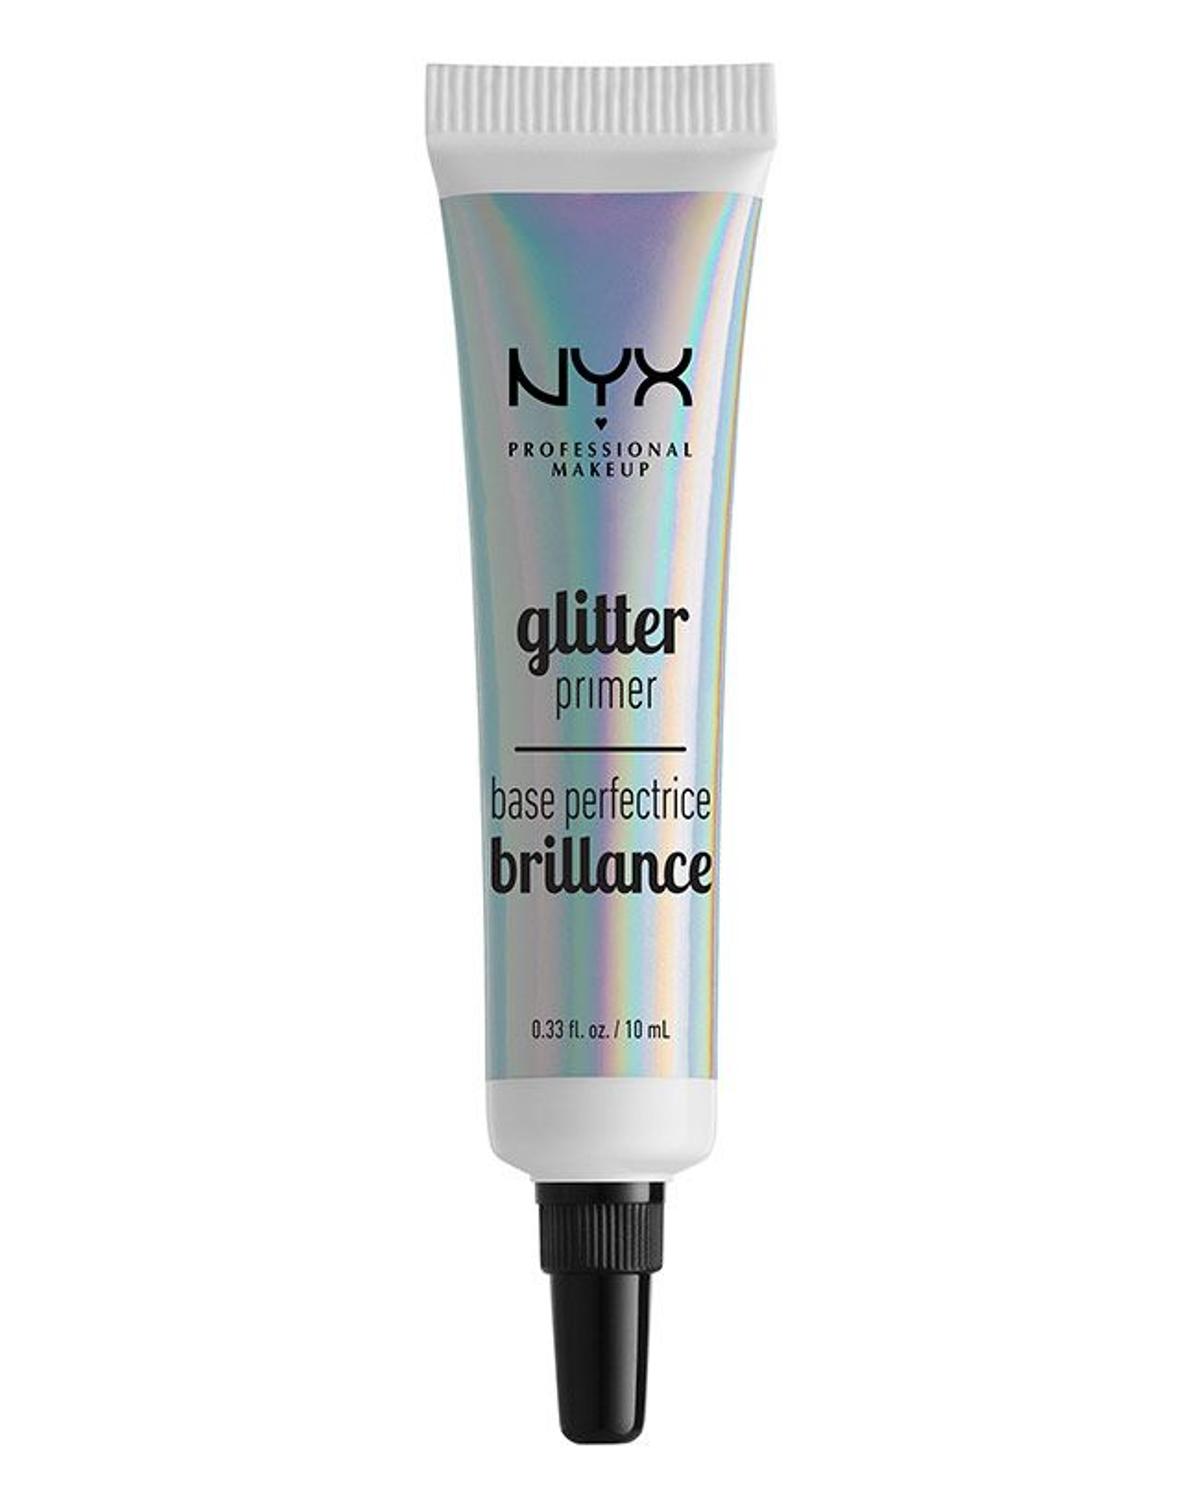 Glitter Primer de NYX es un básico para las fans de los maquillajes de Euphoria.